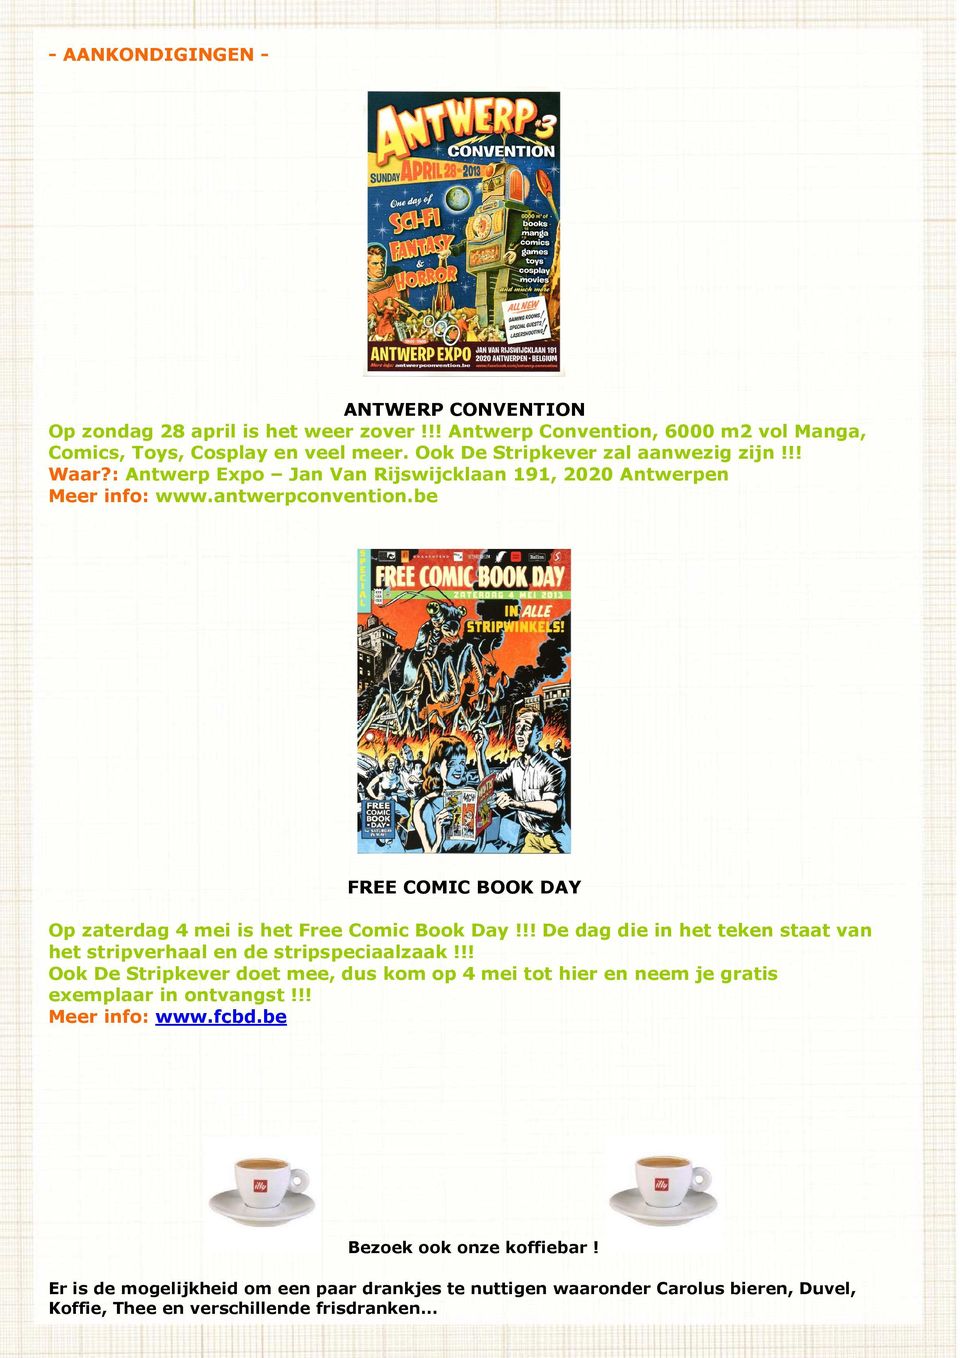 be FREE COMIC BOOK DAY Op zaterdag 4 mei is het Free Comic Book Day!!! De dag die in het teken staat van het stripverhaal en de stripspeciaalzaak!